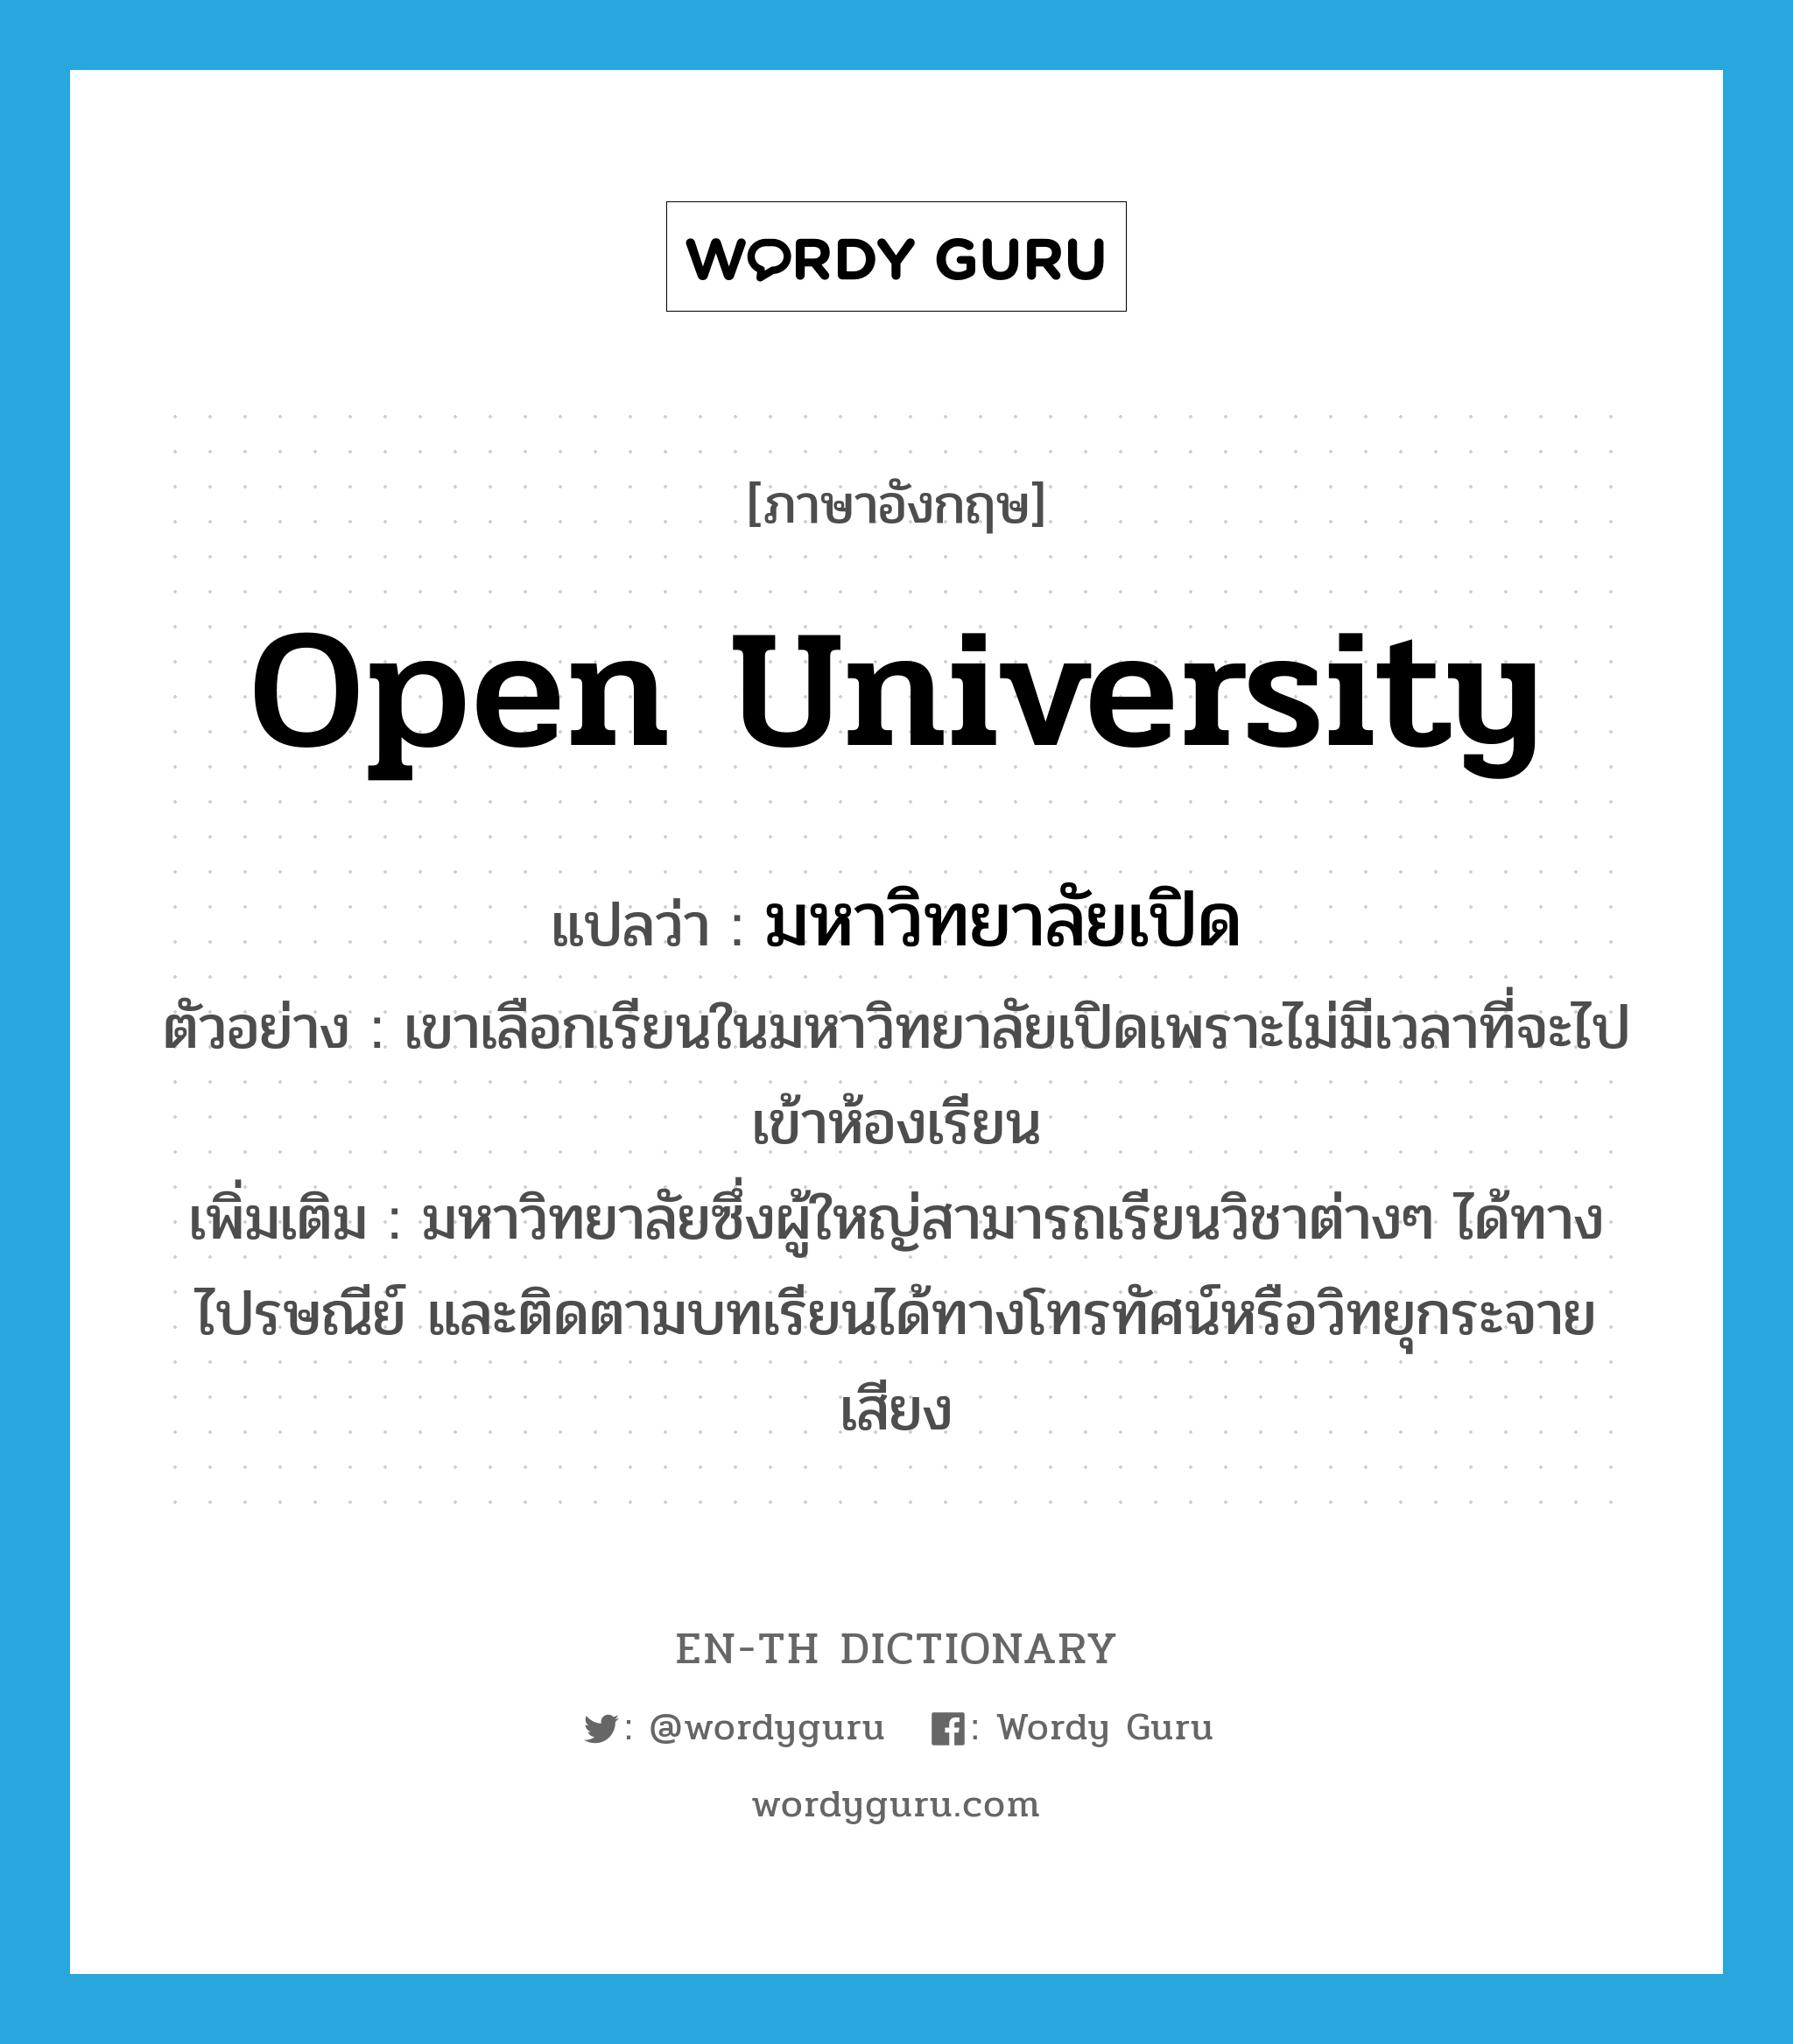 Open University แปลว่า?, คำศัพท์ภาษาอังกฤษ Open University แปลว่า มหาวิทยาลัยเปิด ประเภท N ตัวอย่าง เขาเลือกเรียนในมหาวิทยาลัยเปิดเพราะไม่มีเวลาที่จะไปเข้าห้องเรียน เพิ่มเติม มหาวิทยาลัยซึ่งผู้ใหญ่สามารถเรียนวิชาต่างๆ ได้ทางไปรษณีย์ และติดตามบทเรียนได้ทางโทรทัศน์หรือวิทยุกระจายเสียง หมวด N